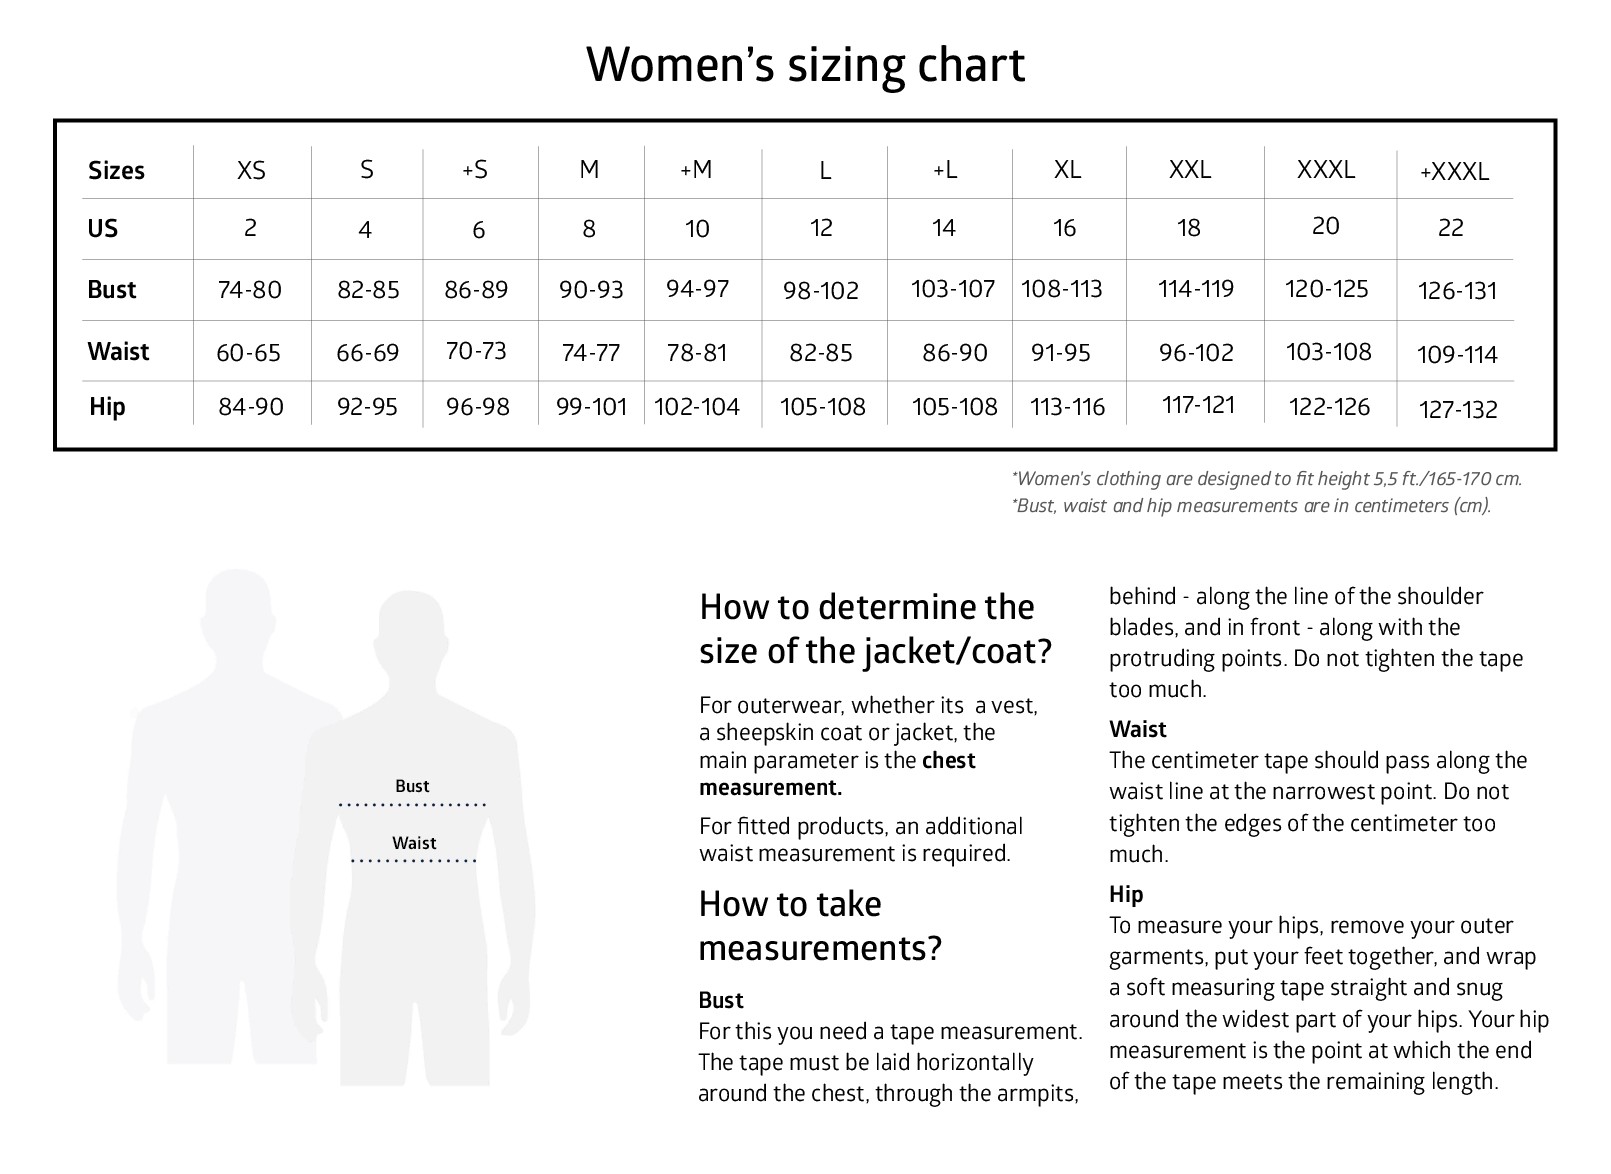 Women's sizing chart.